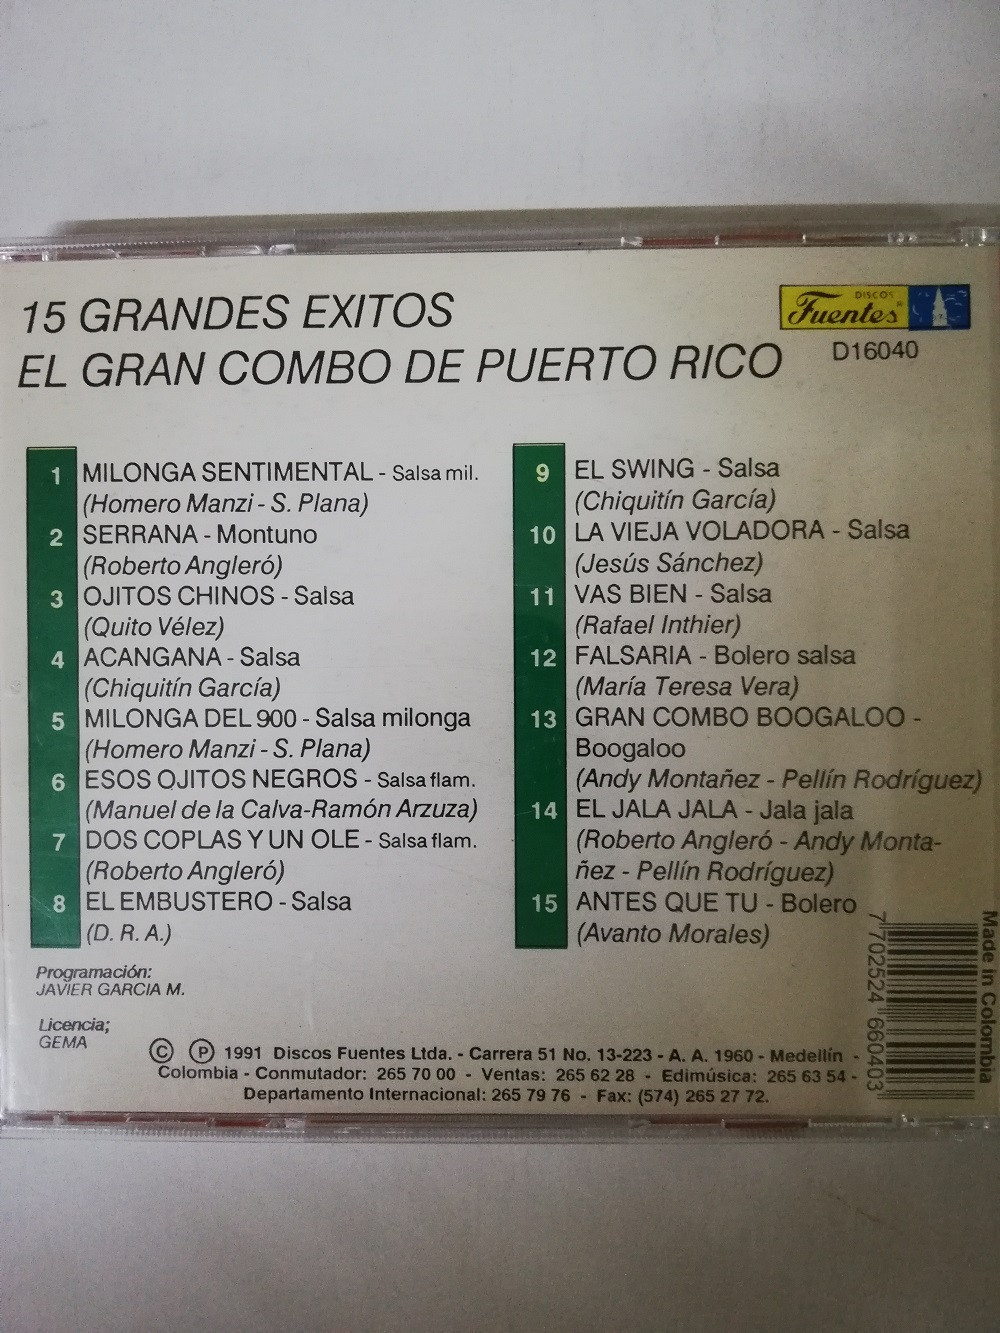 Imagen CD EL GRAN COMBO DE PUERTO RICO - 15 GRANDES EXITOS 2